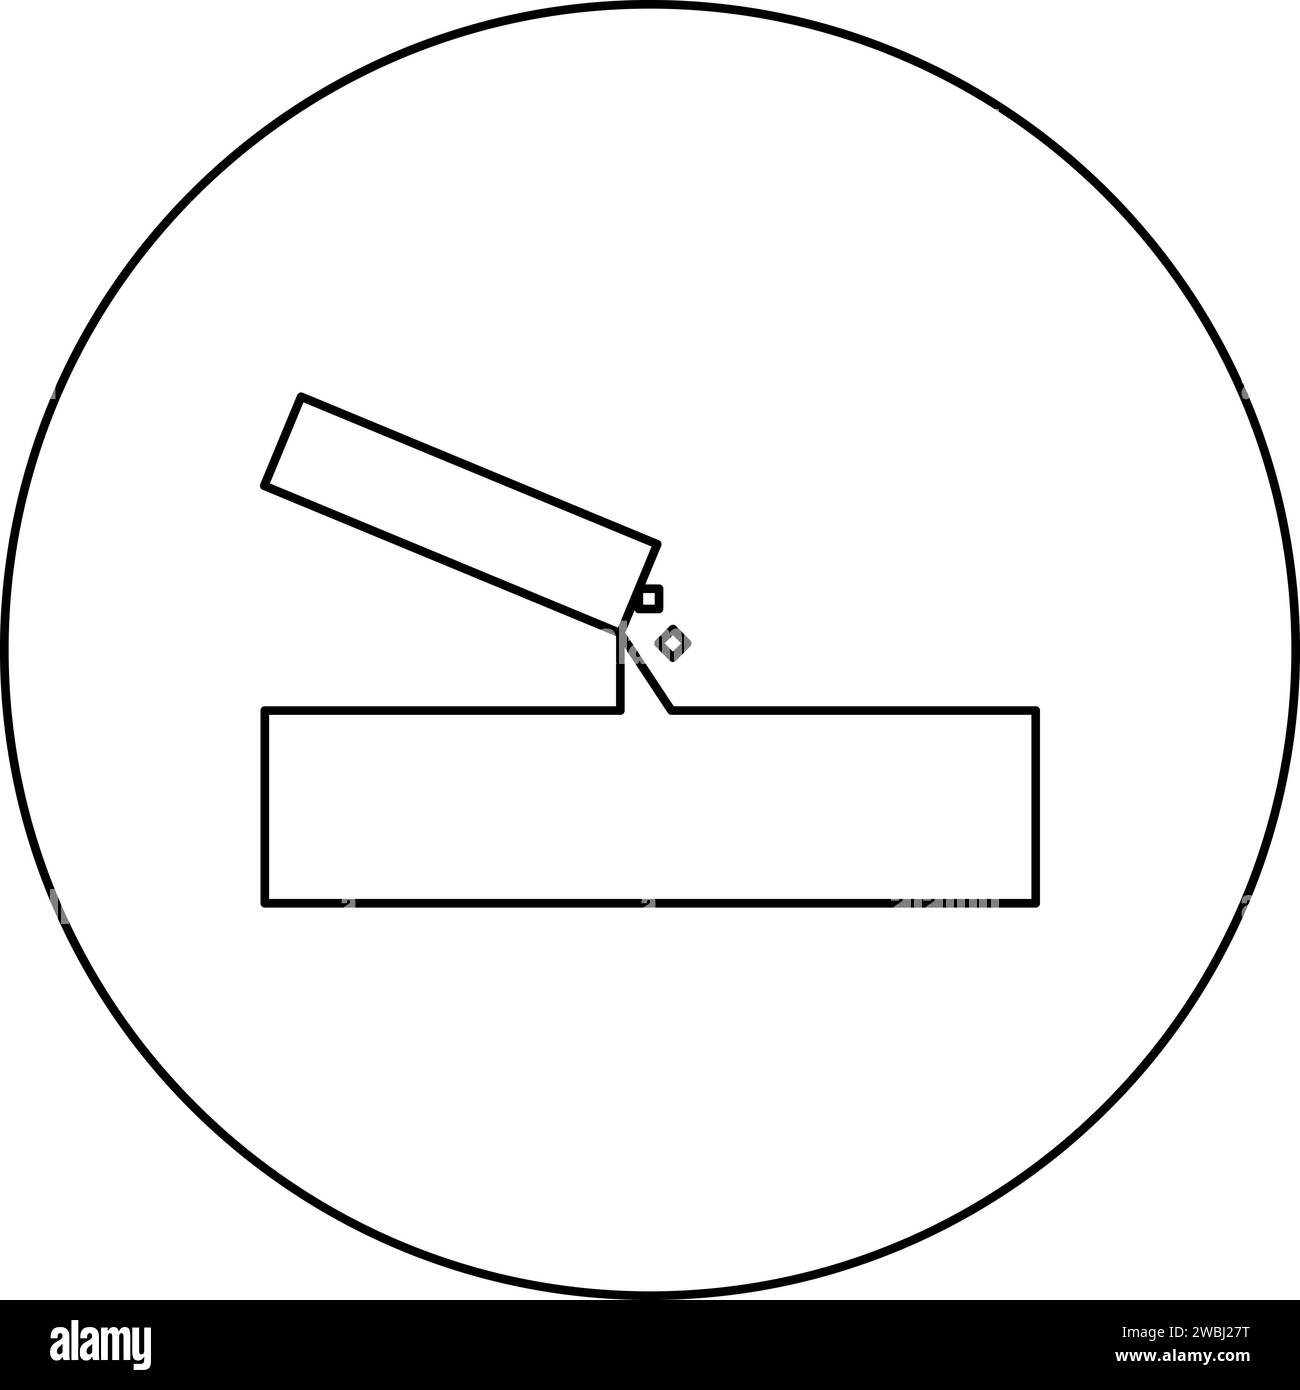 Béton verse l'icône de coulée dans le cercle rond couleur noire illustration vectorielle image contour ligne contour fin style simple Illustration de Vecteur